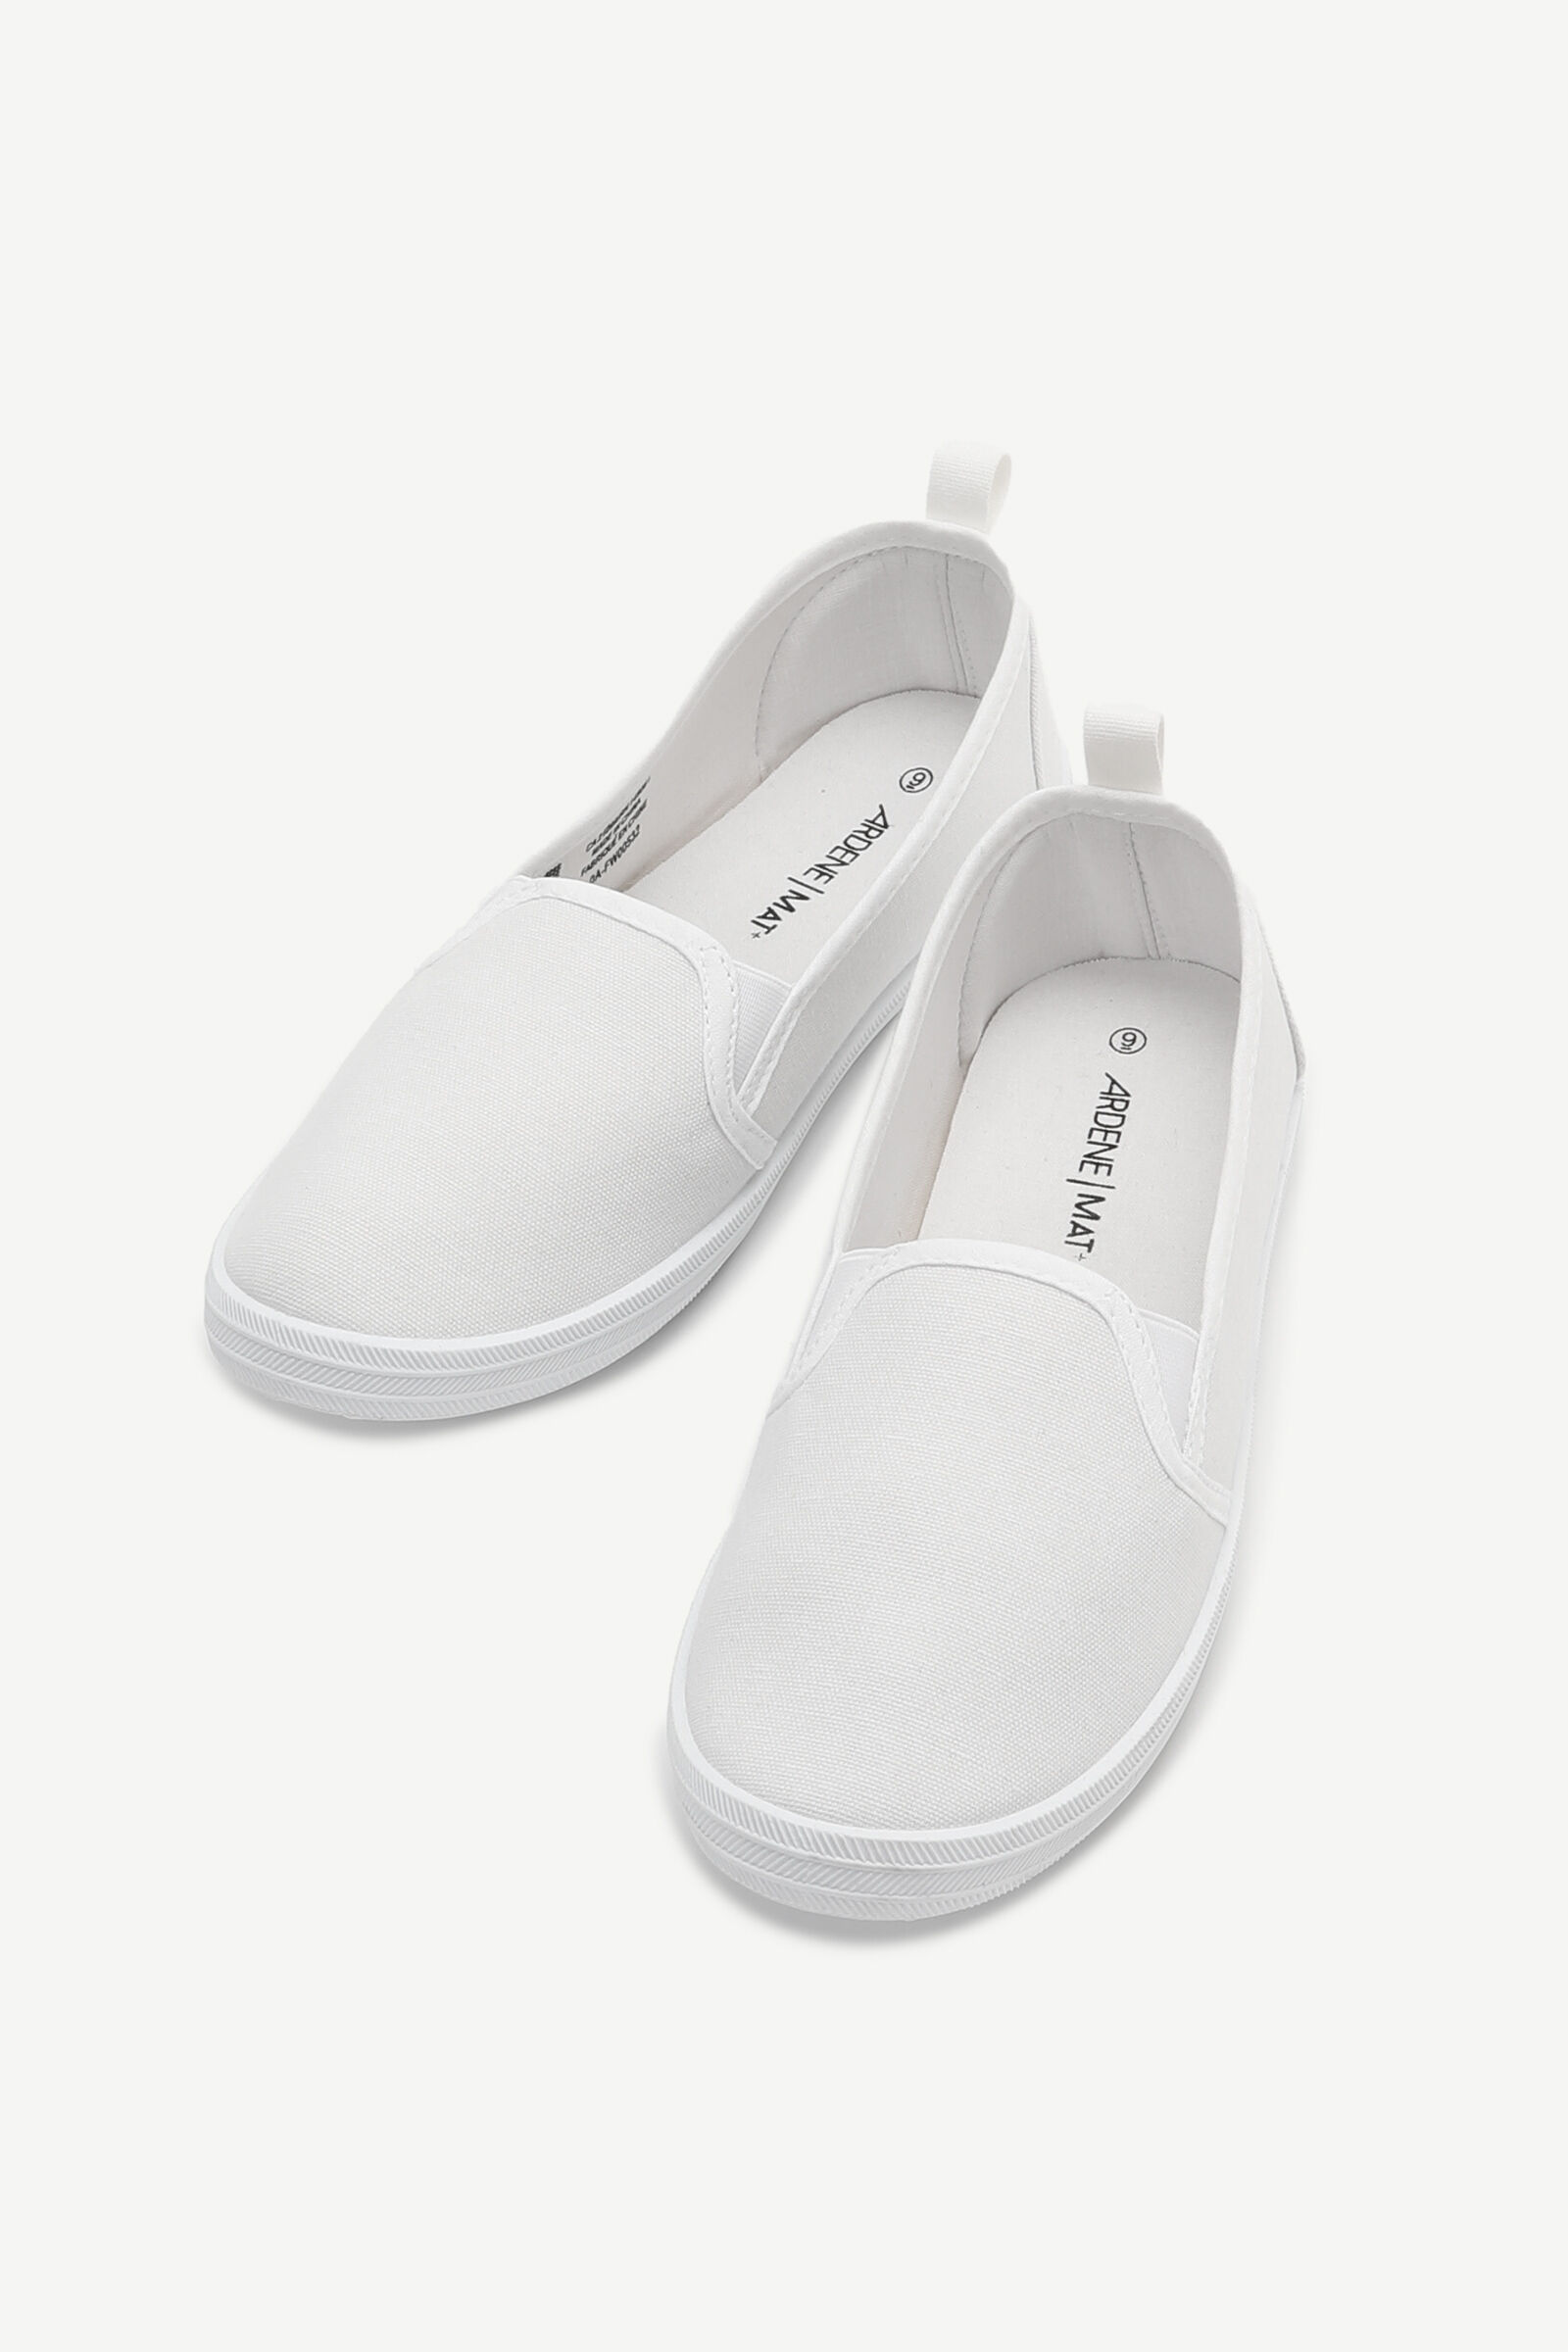 ardene white shoes